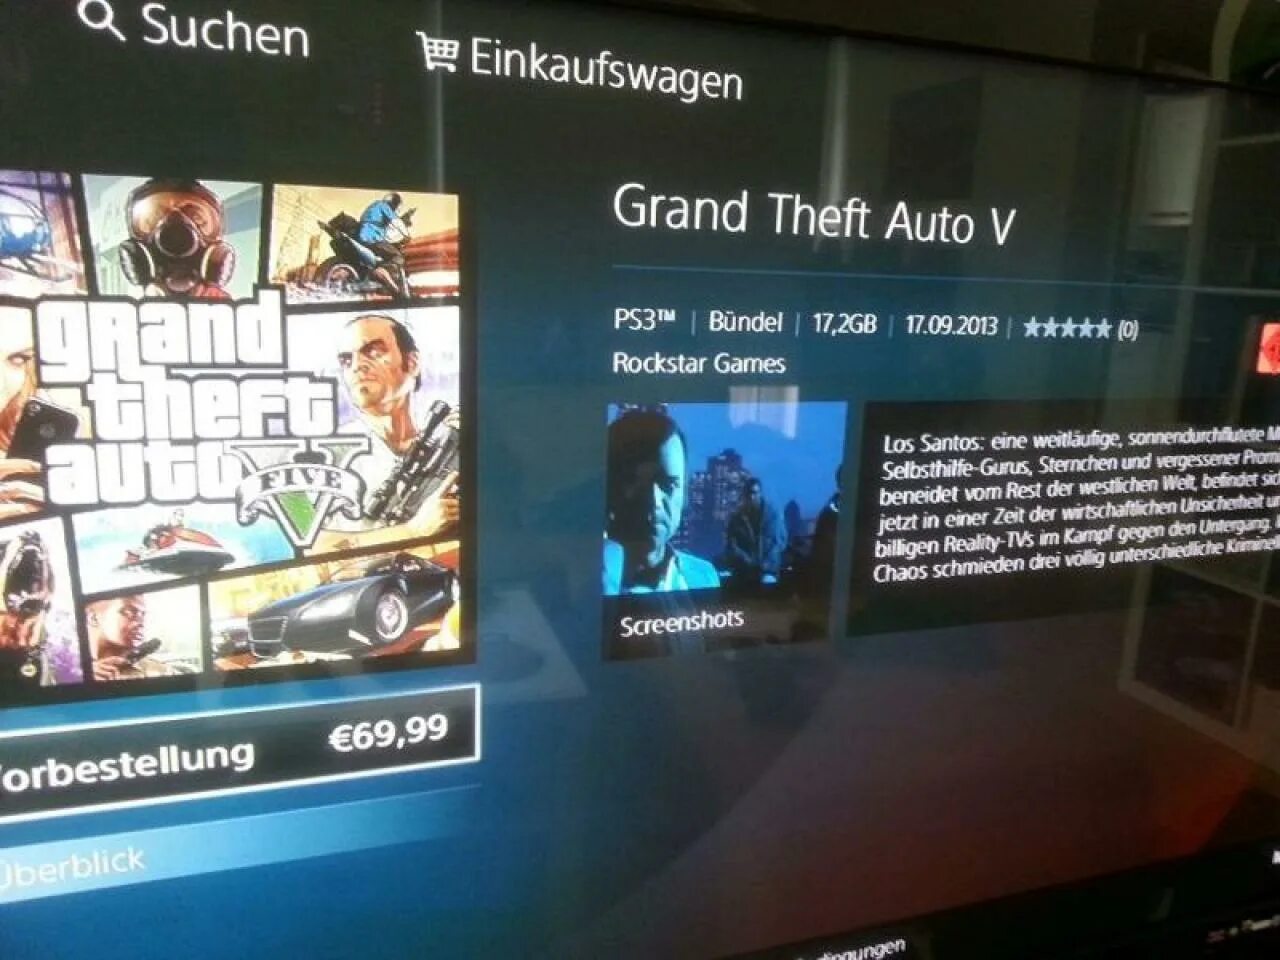 Где найти ps5. Коллекционное издание ps3 Grand Theft auto 5. PLAYSTATION Store GTA 4. ГТА 5 ПС 4 В ПС сторе. GTA 5 PLAYSTATION 4 Store.